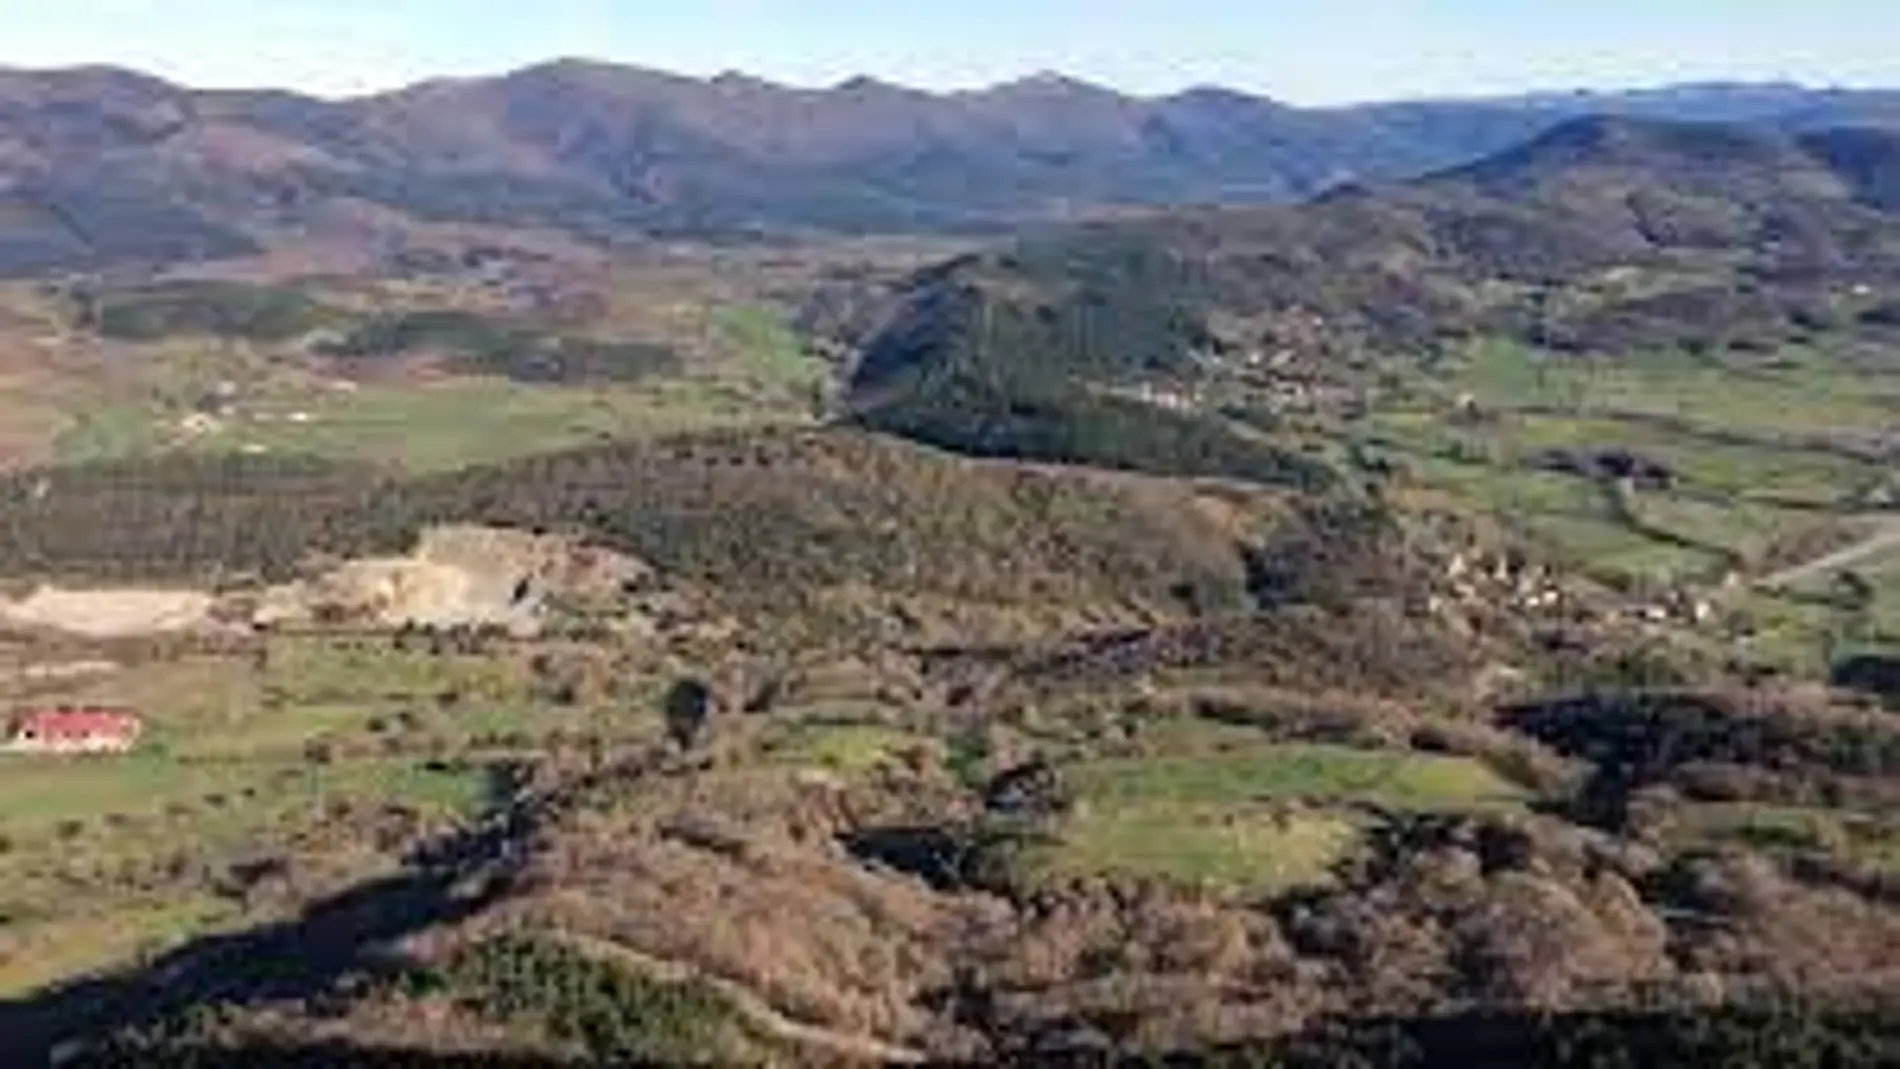 Vista del Valle de Mena en Burgos, desde el Pico Cantonad